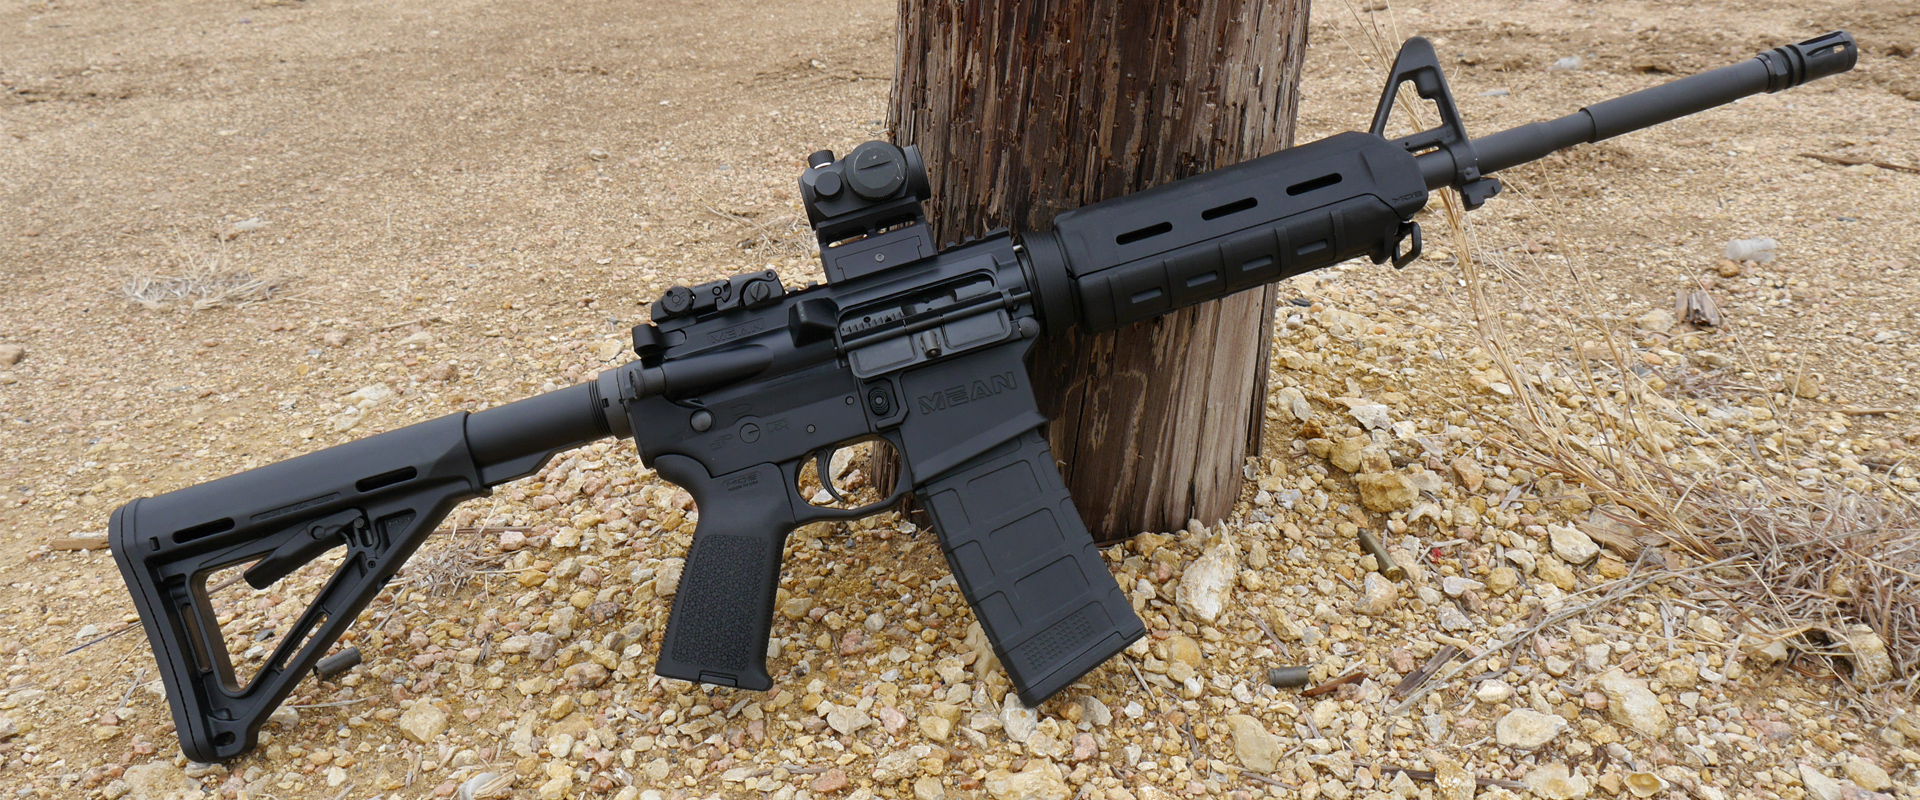 ma-hybrid-ar-15-rifle-mean-arms-free-nude-porn-photos